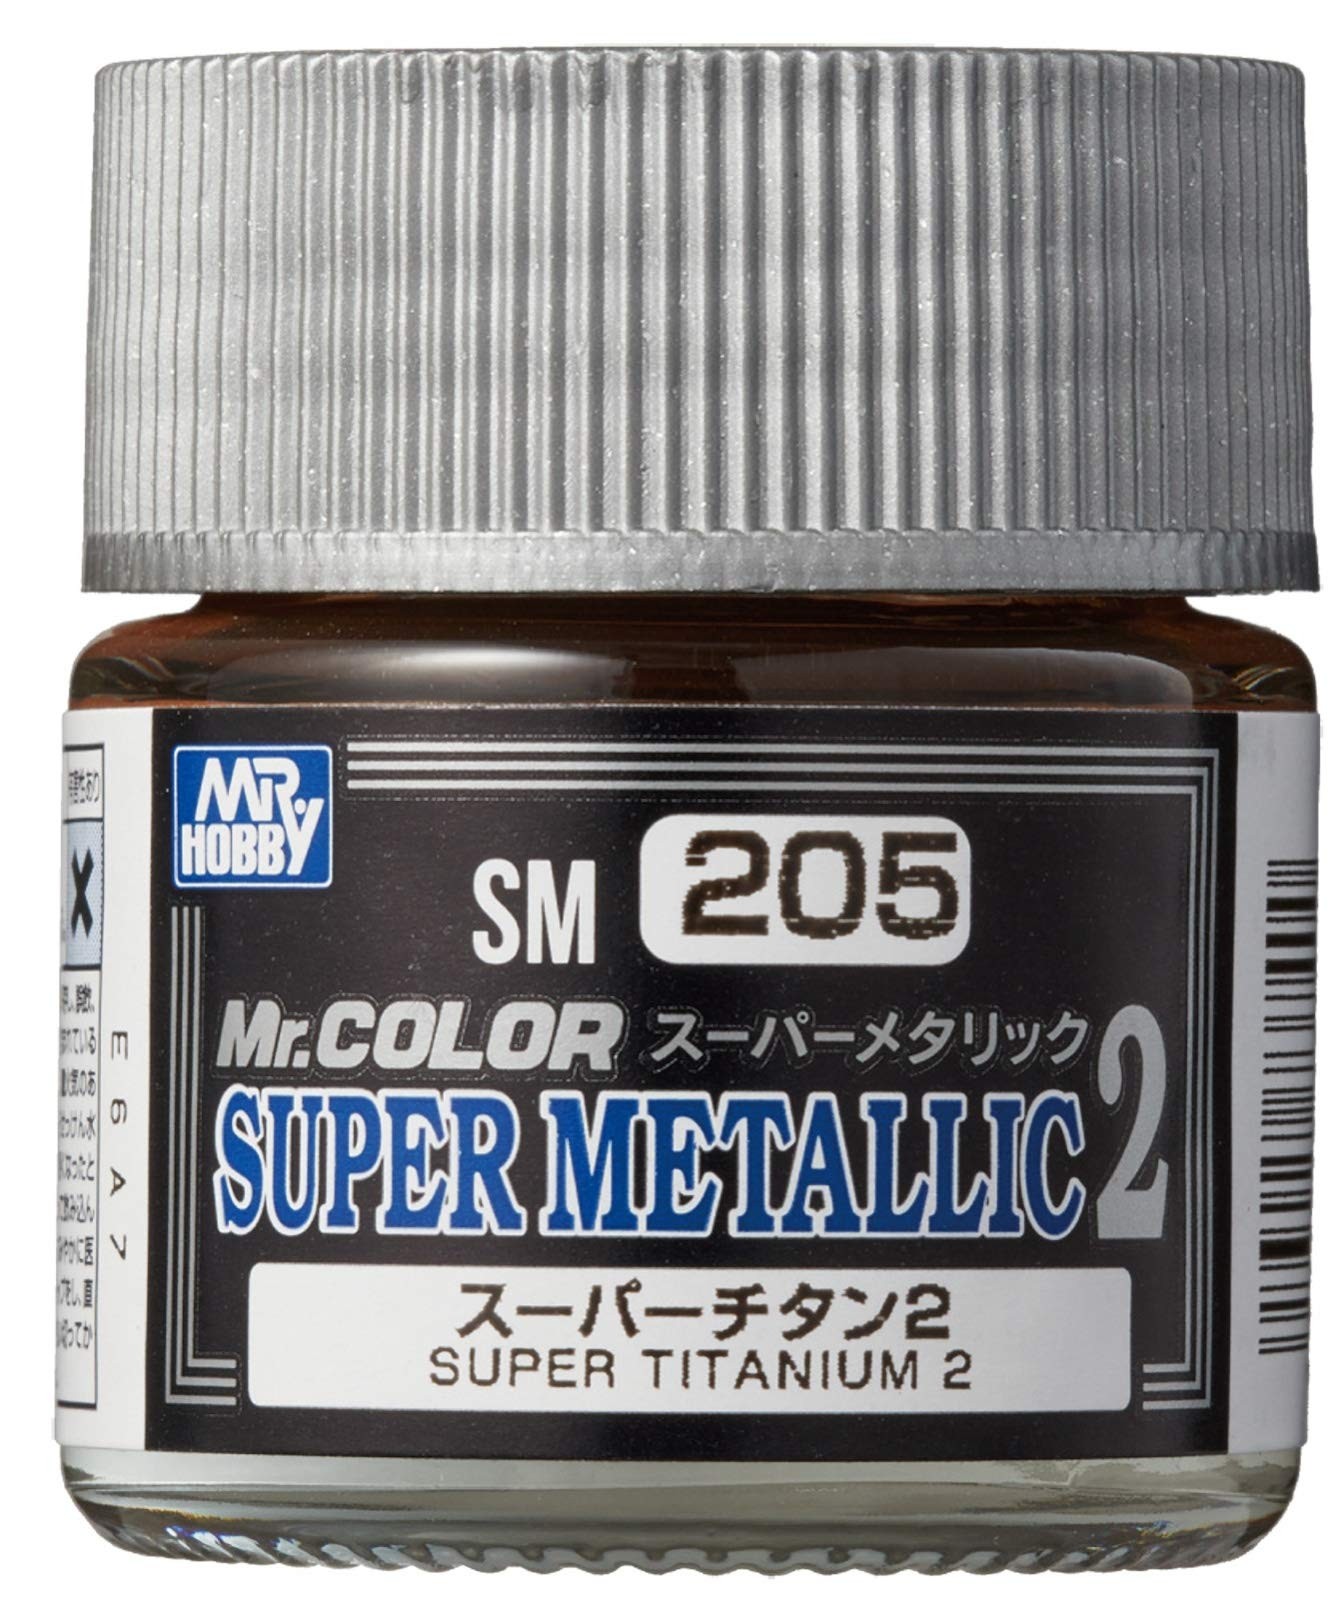 Titanium 10 ml - Mr. Color Super Metallic 2